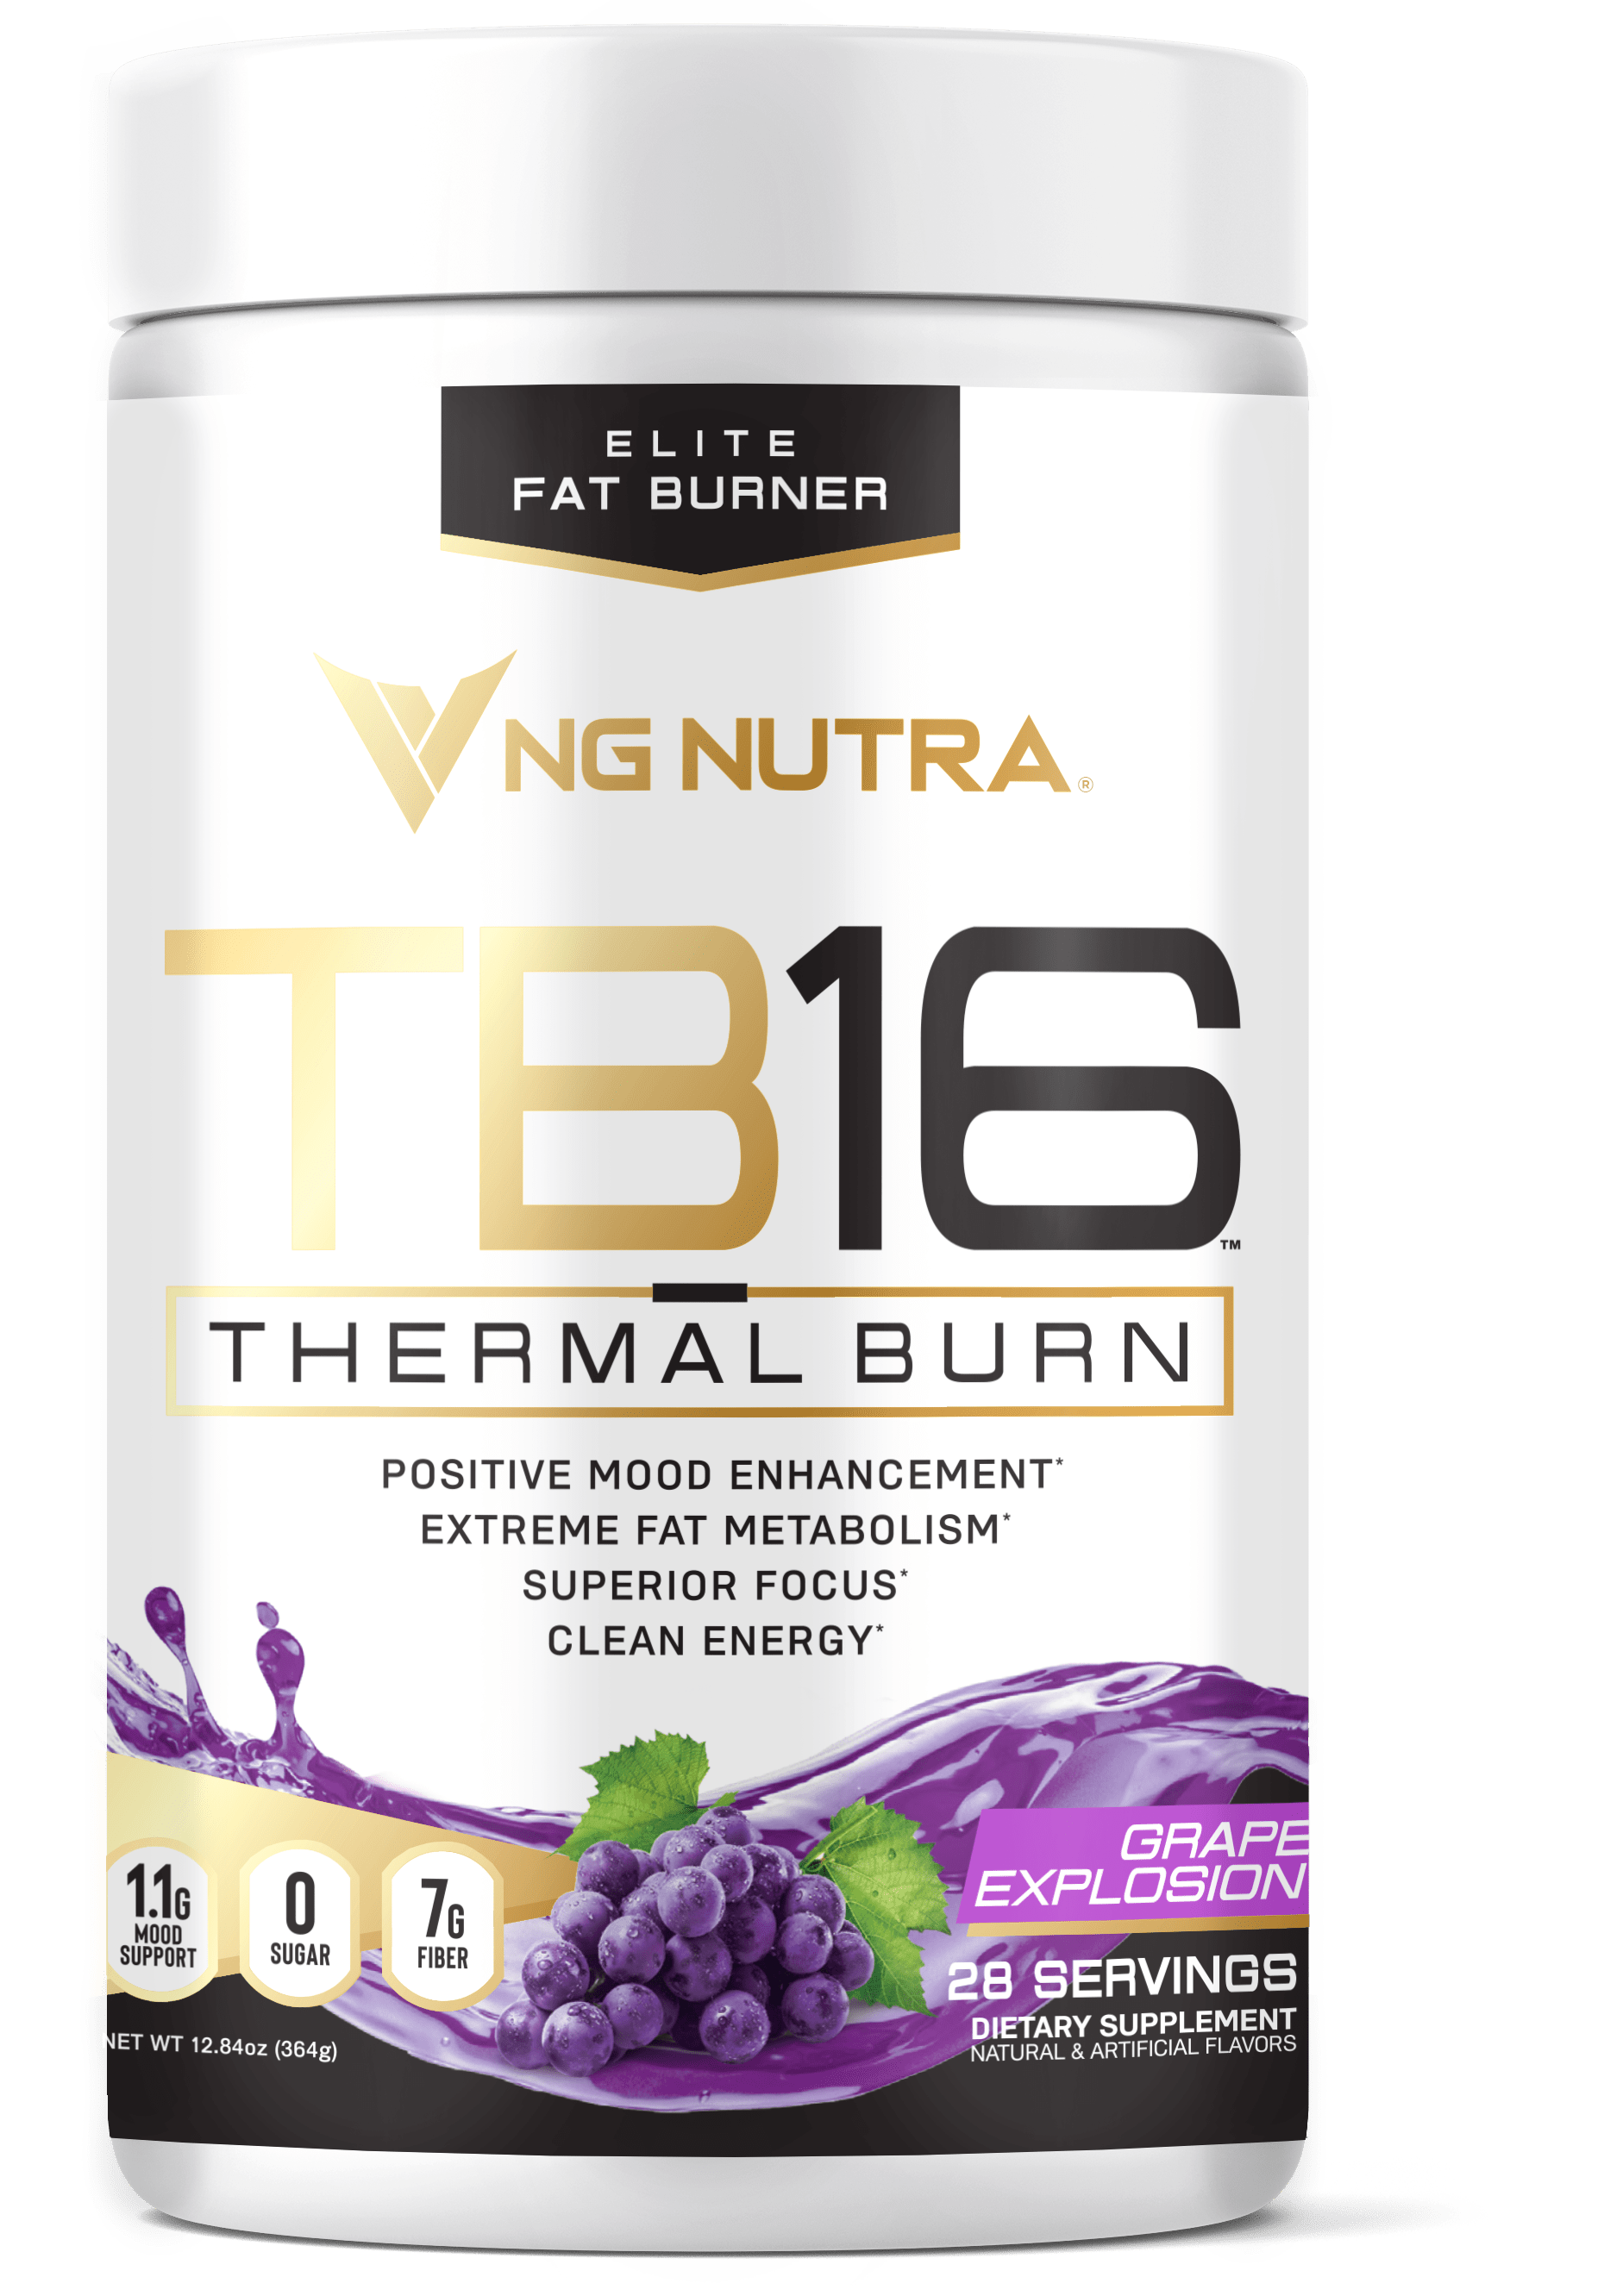 NG Nutra TB16 Thermal Burn